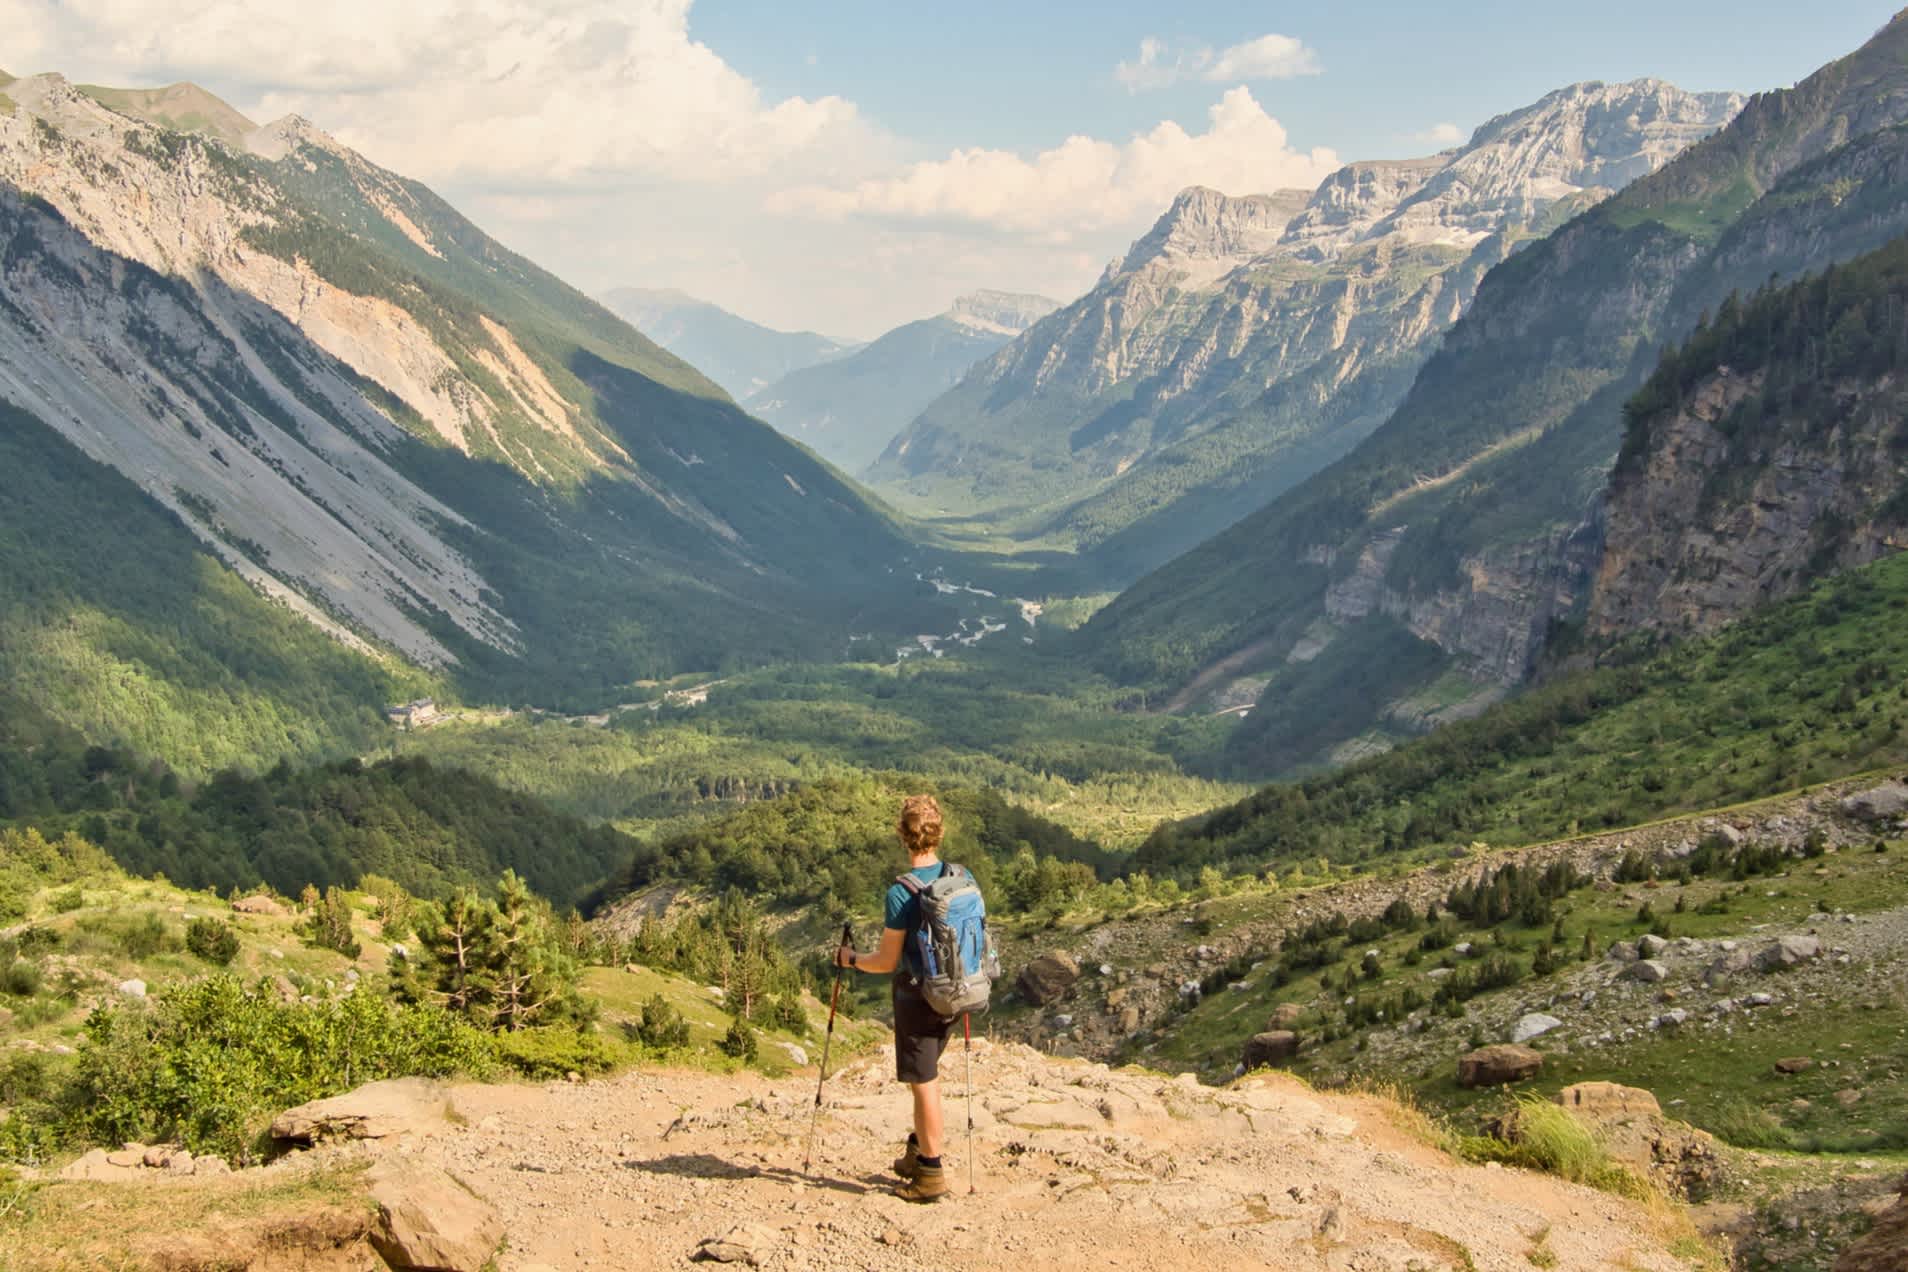 Mann mit Wanderstöcken blickt auf ein Tal zwischen majestätischen Bergen